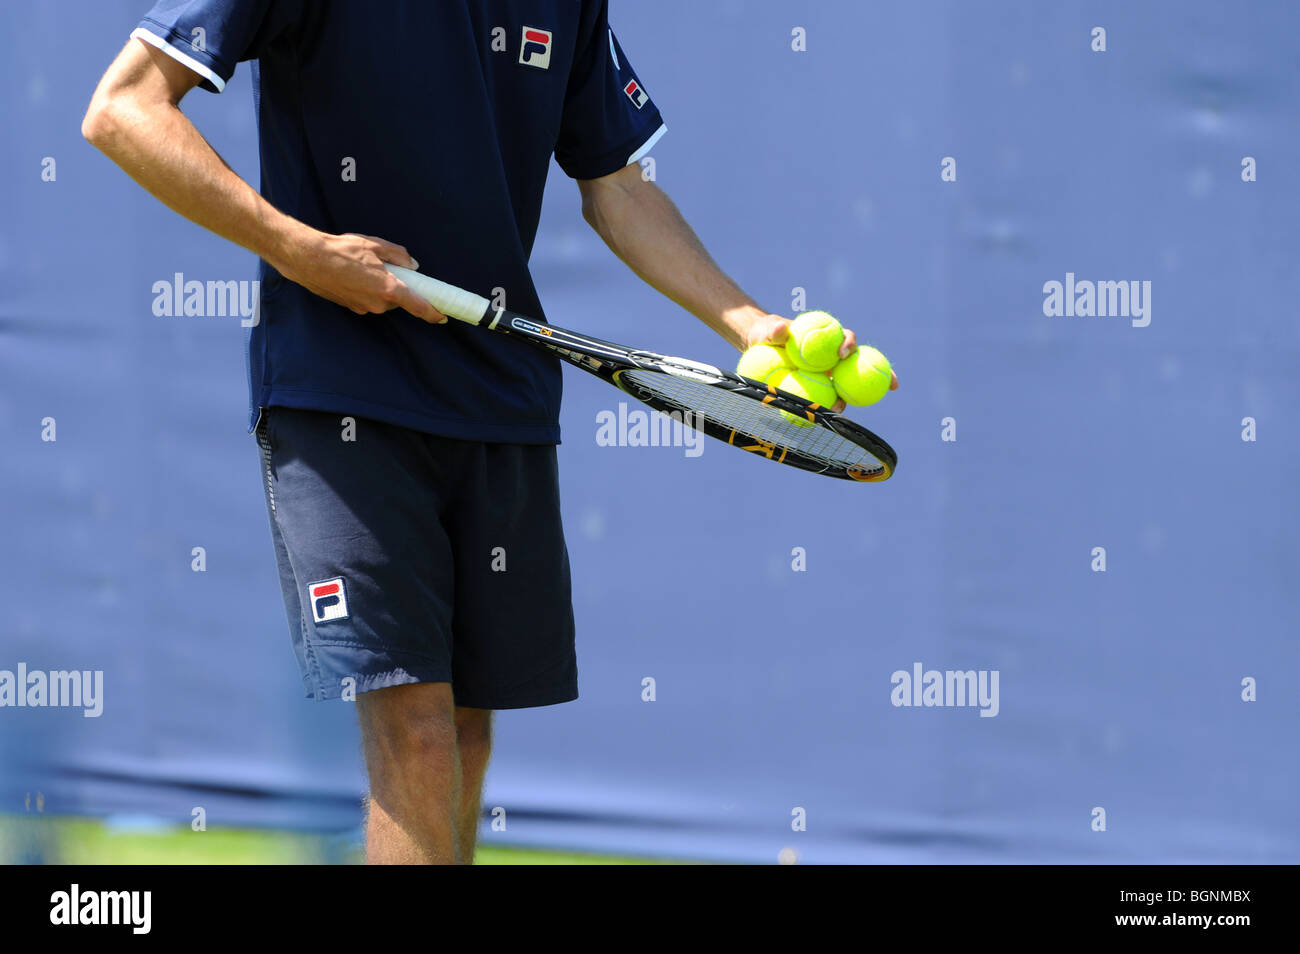 Un jugador de tenis pruebas las bolas antes de servir Foto de stock